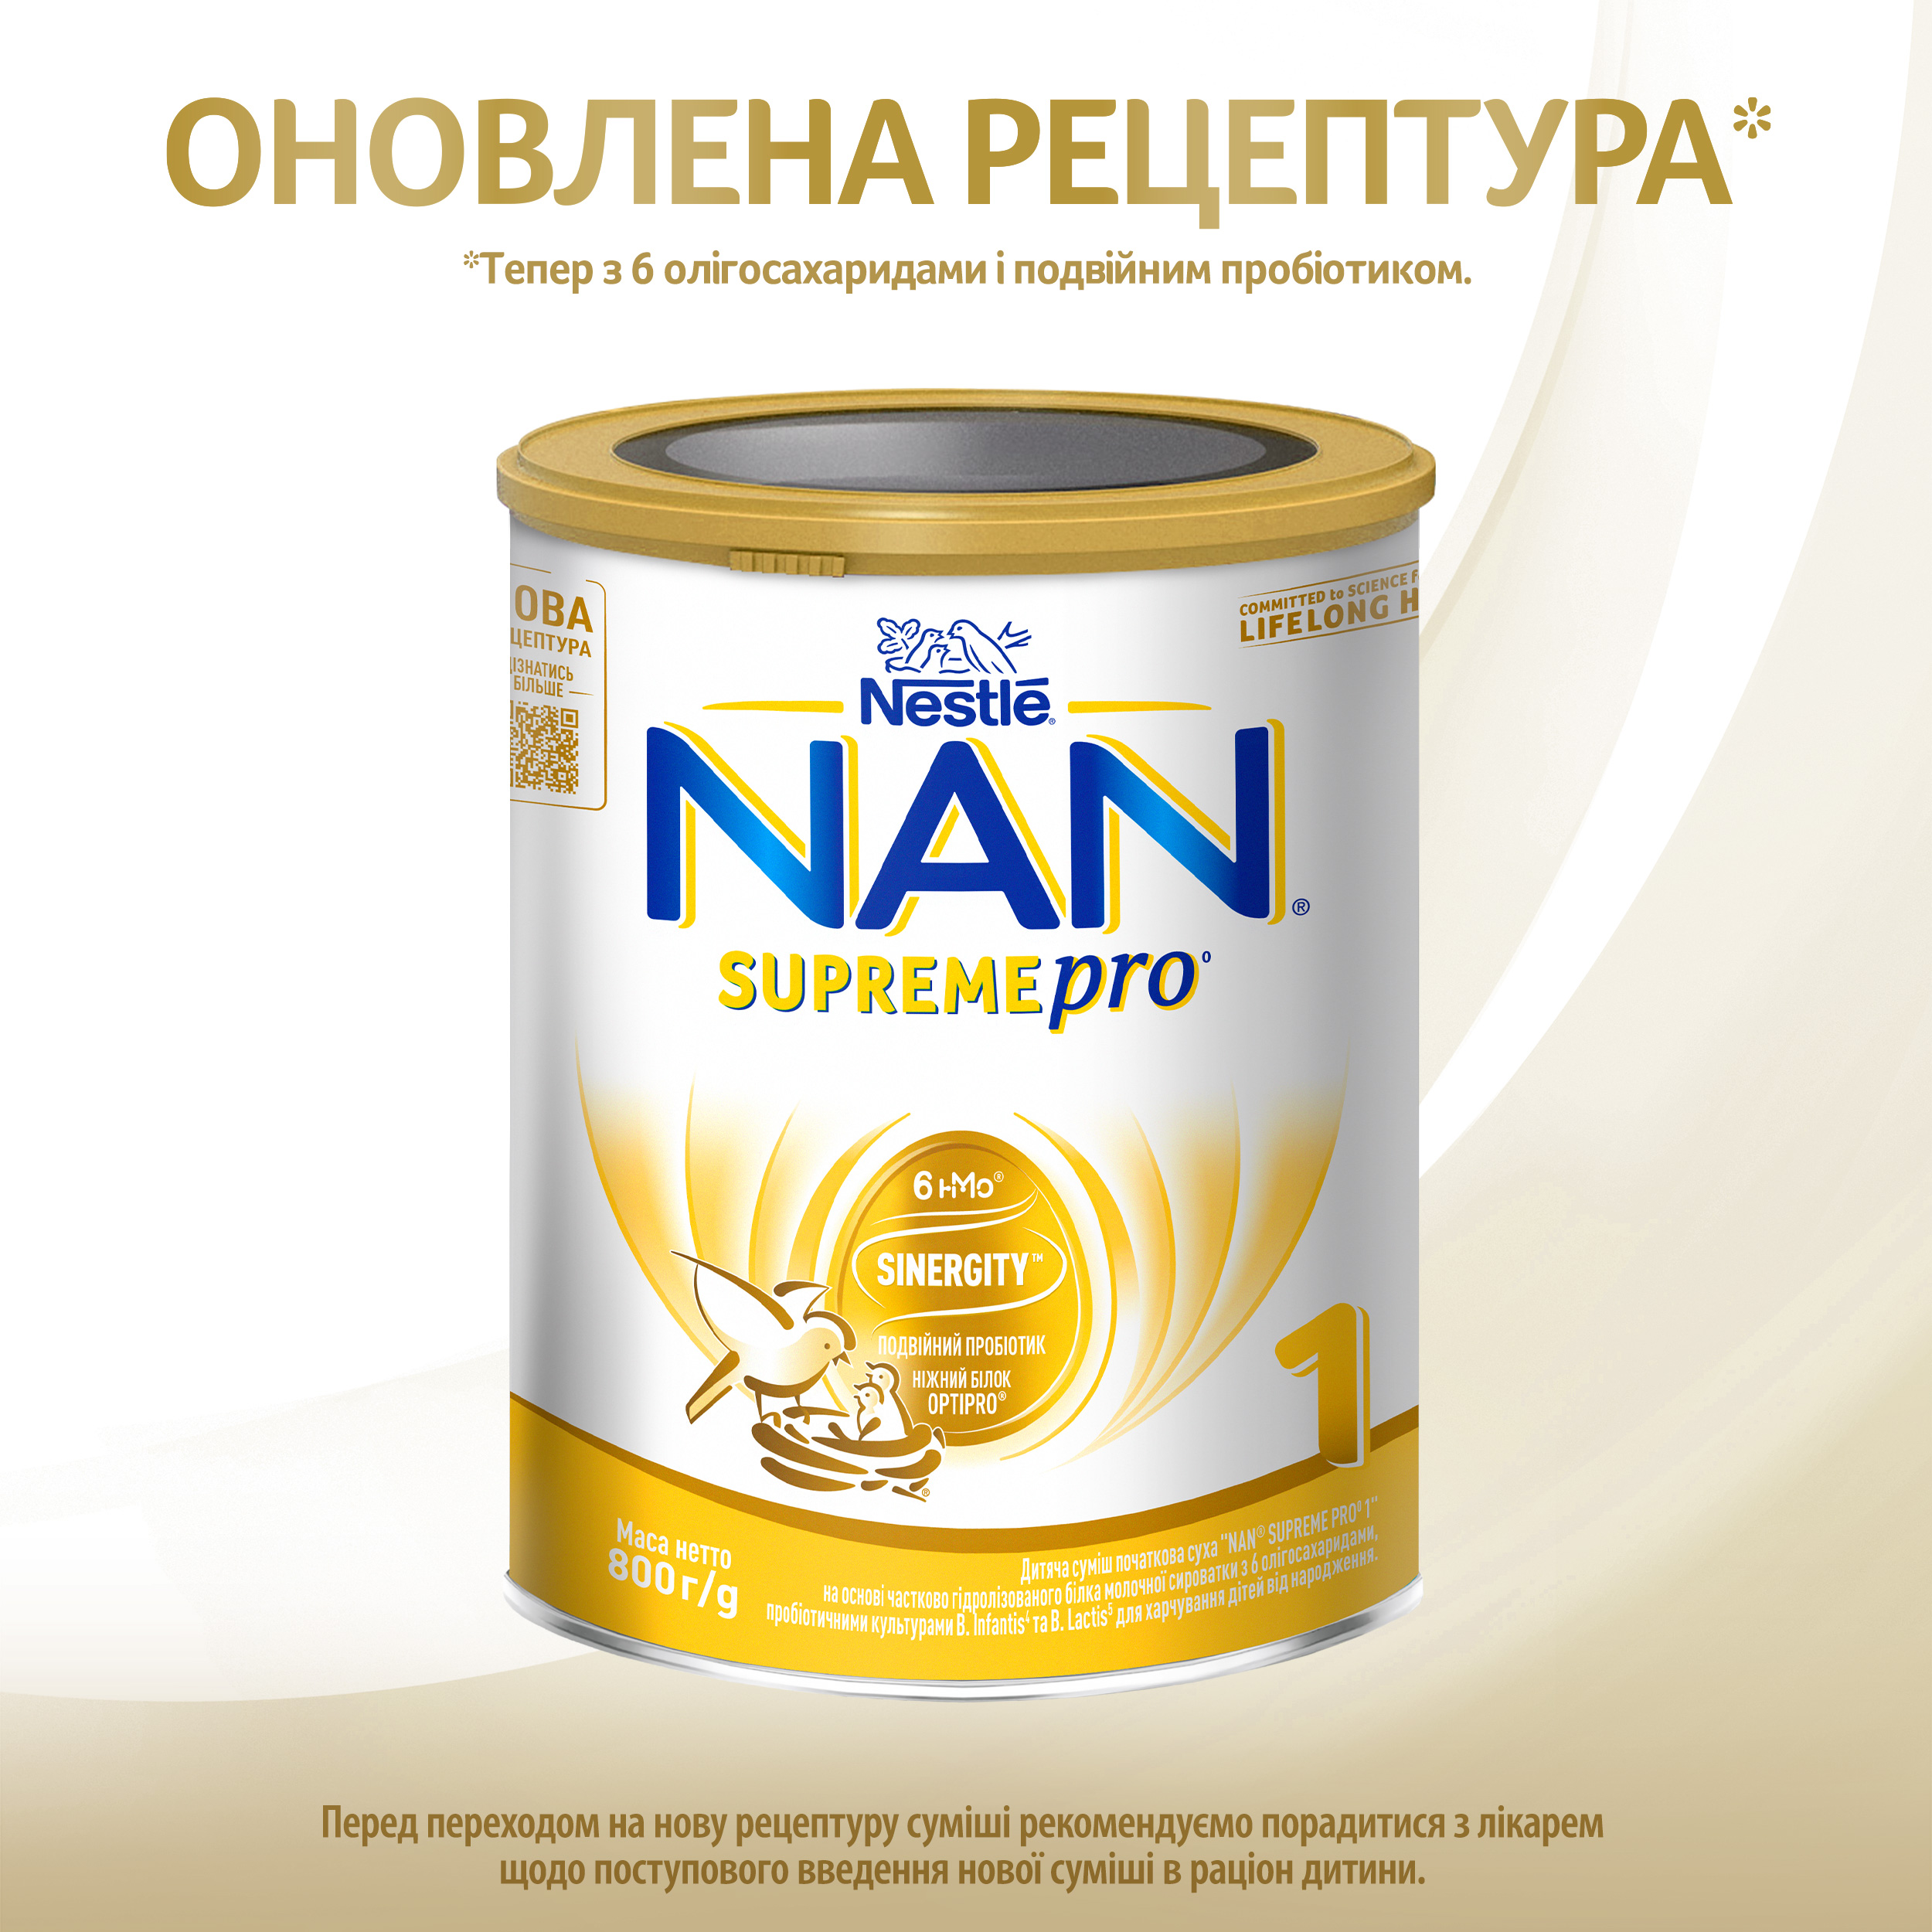 Сухая молочная смесь NAN Supreme Pro 1, 800 г - фото 2